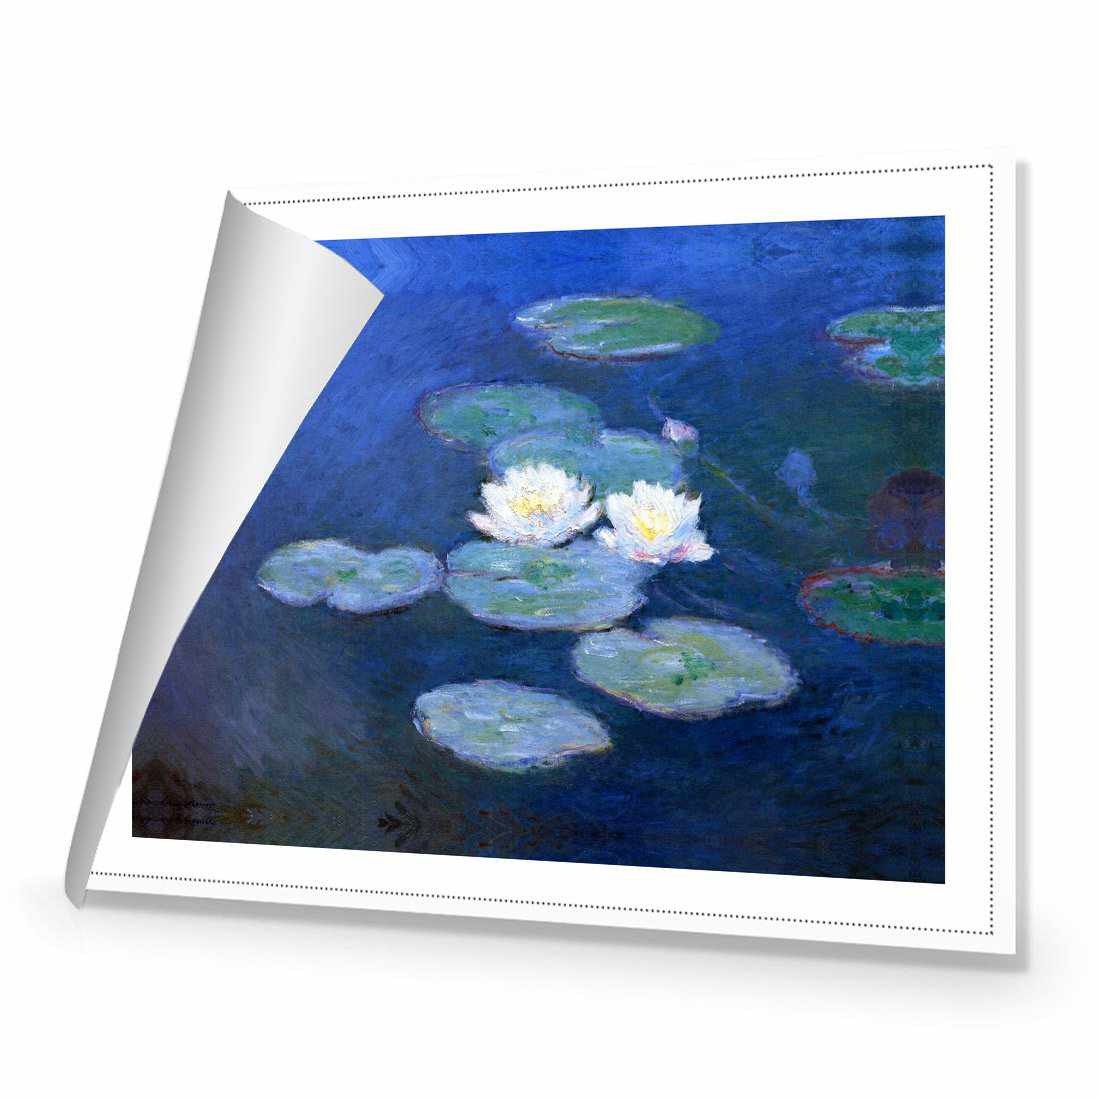 Water Lilies 7 - Monet Canvas Art-Canvas-Wall Art Designs-45x30cm-Rolled Canvas-Wall Art Designs